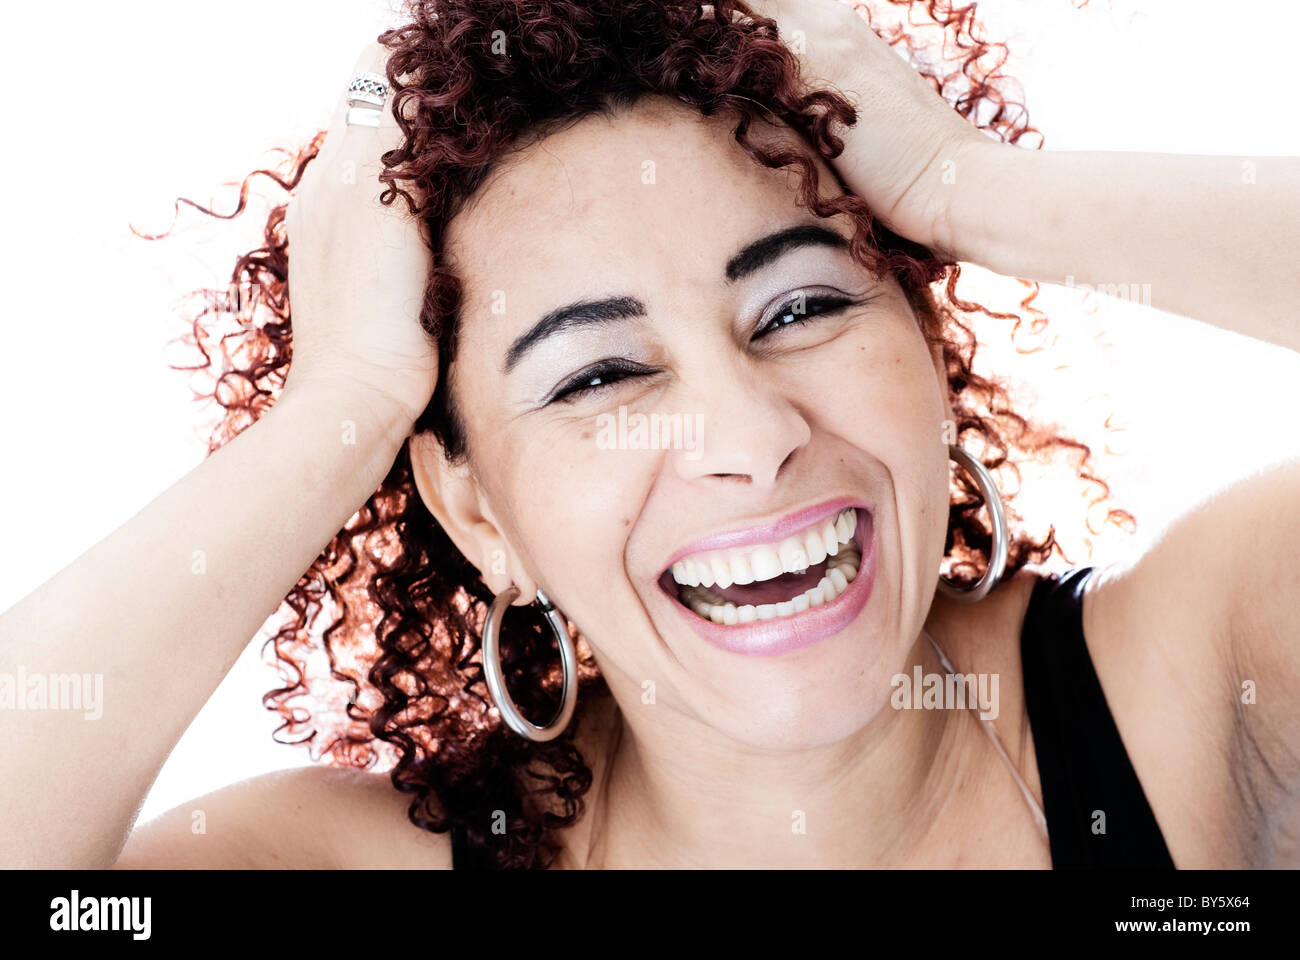 Brazilian woman smiling avec ses mains sur sa tête, a les cheveux bouclés et portait un débardeur noir Banque D'Images